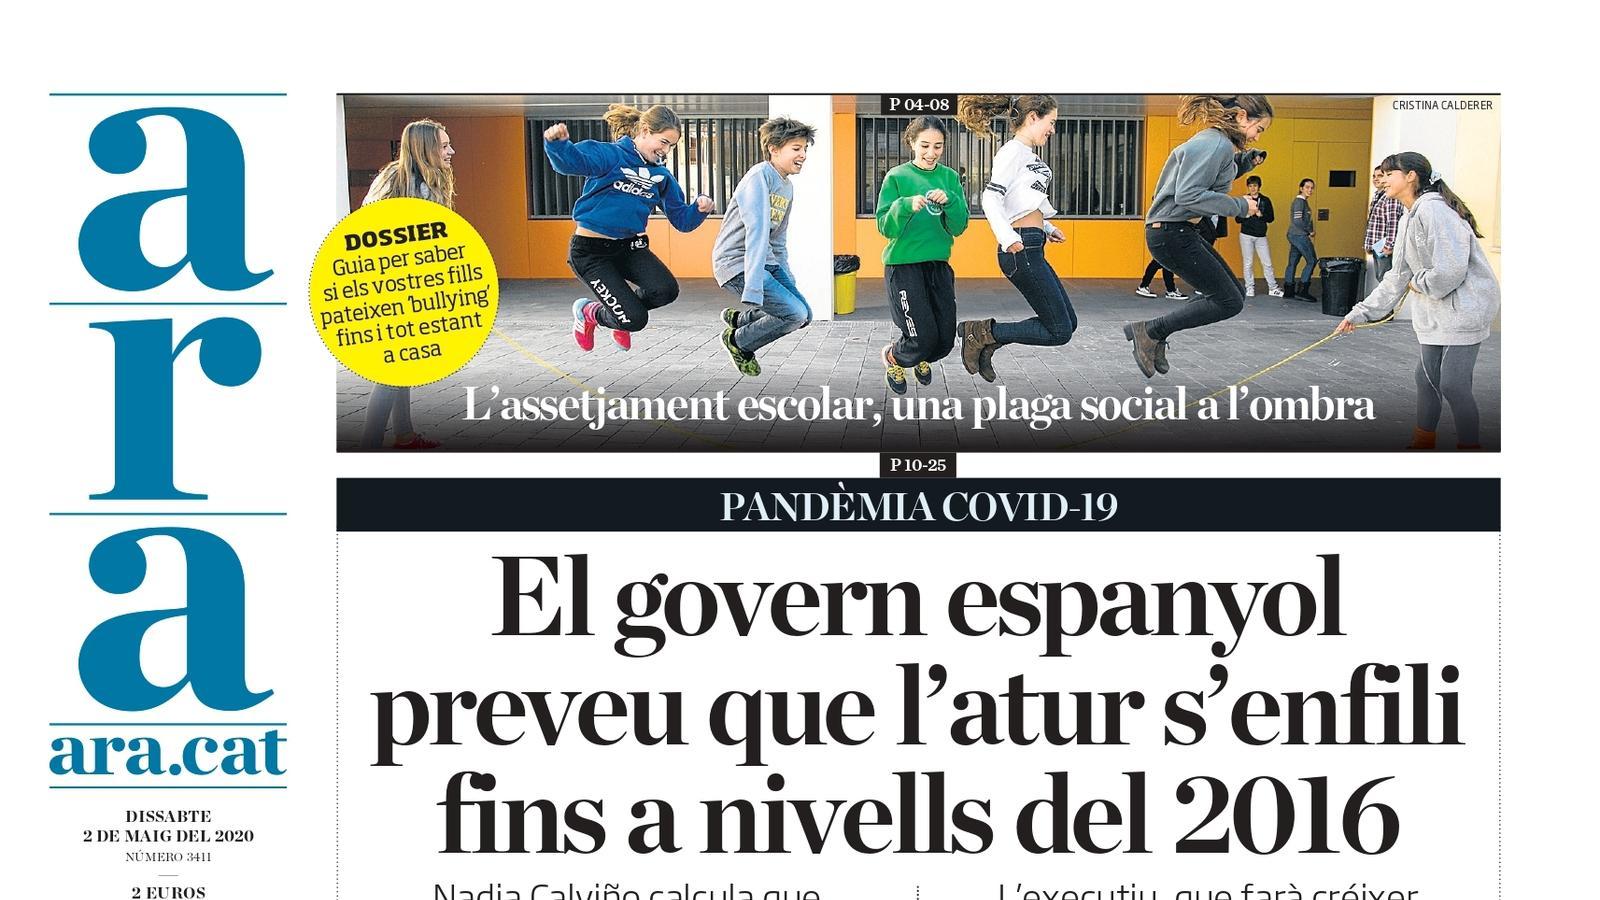 "El govern espanyol preveu que l'atur s'enfili fins a nivells del 2016", la portada de l'ARA